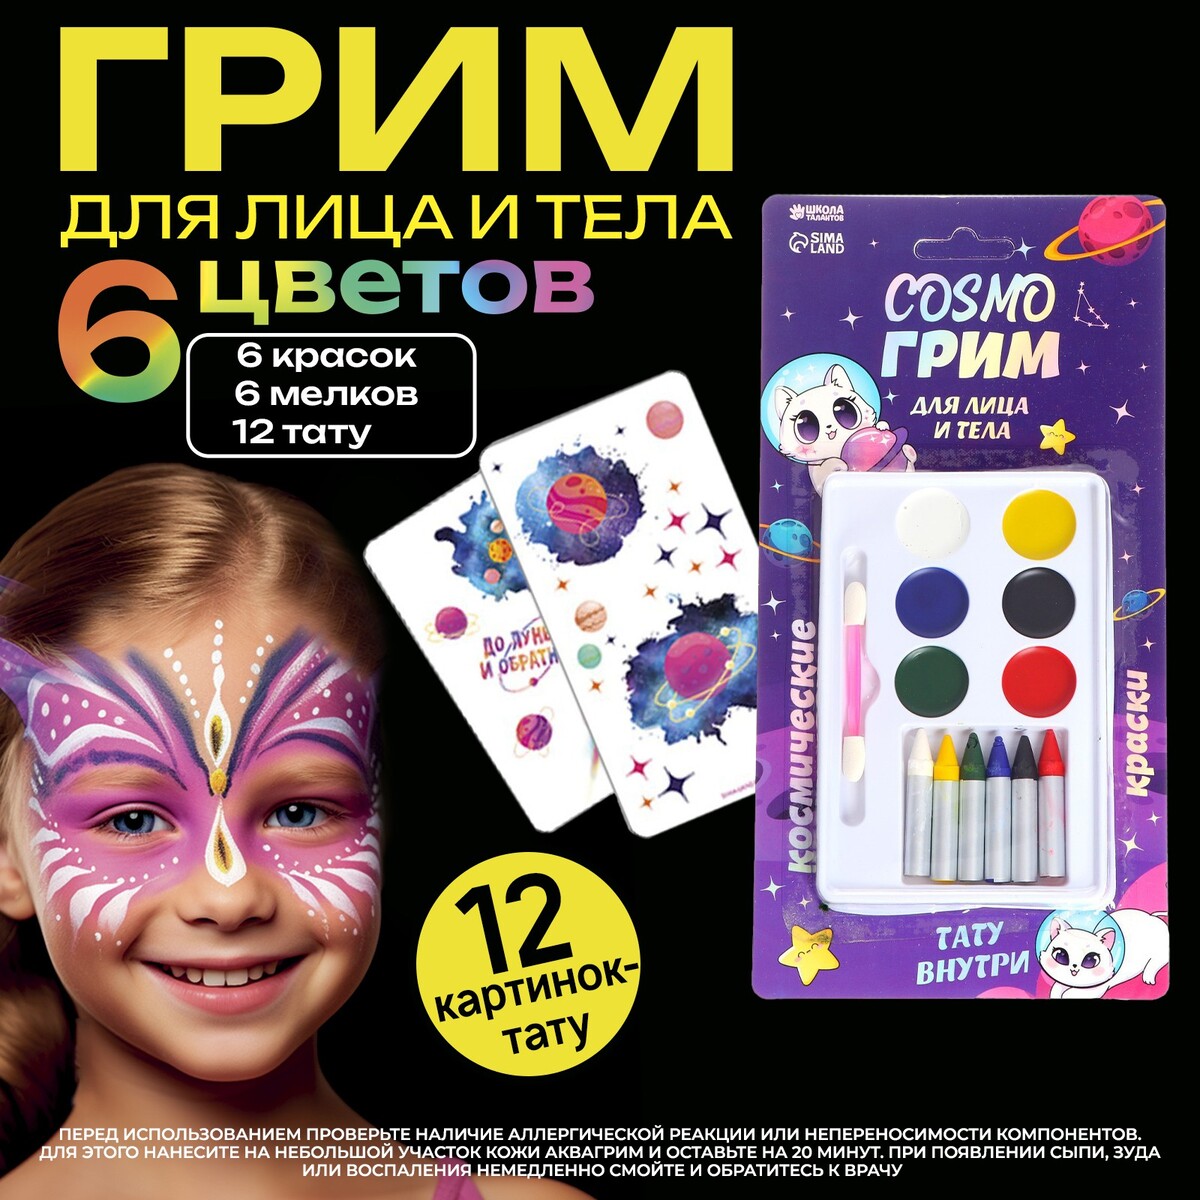 Грим для лица и тела - 6 карандашей, 6 цветов для нанесения, аппликатор, тату cosmo